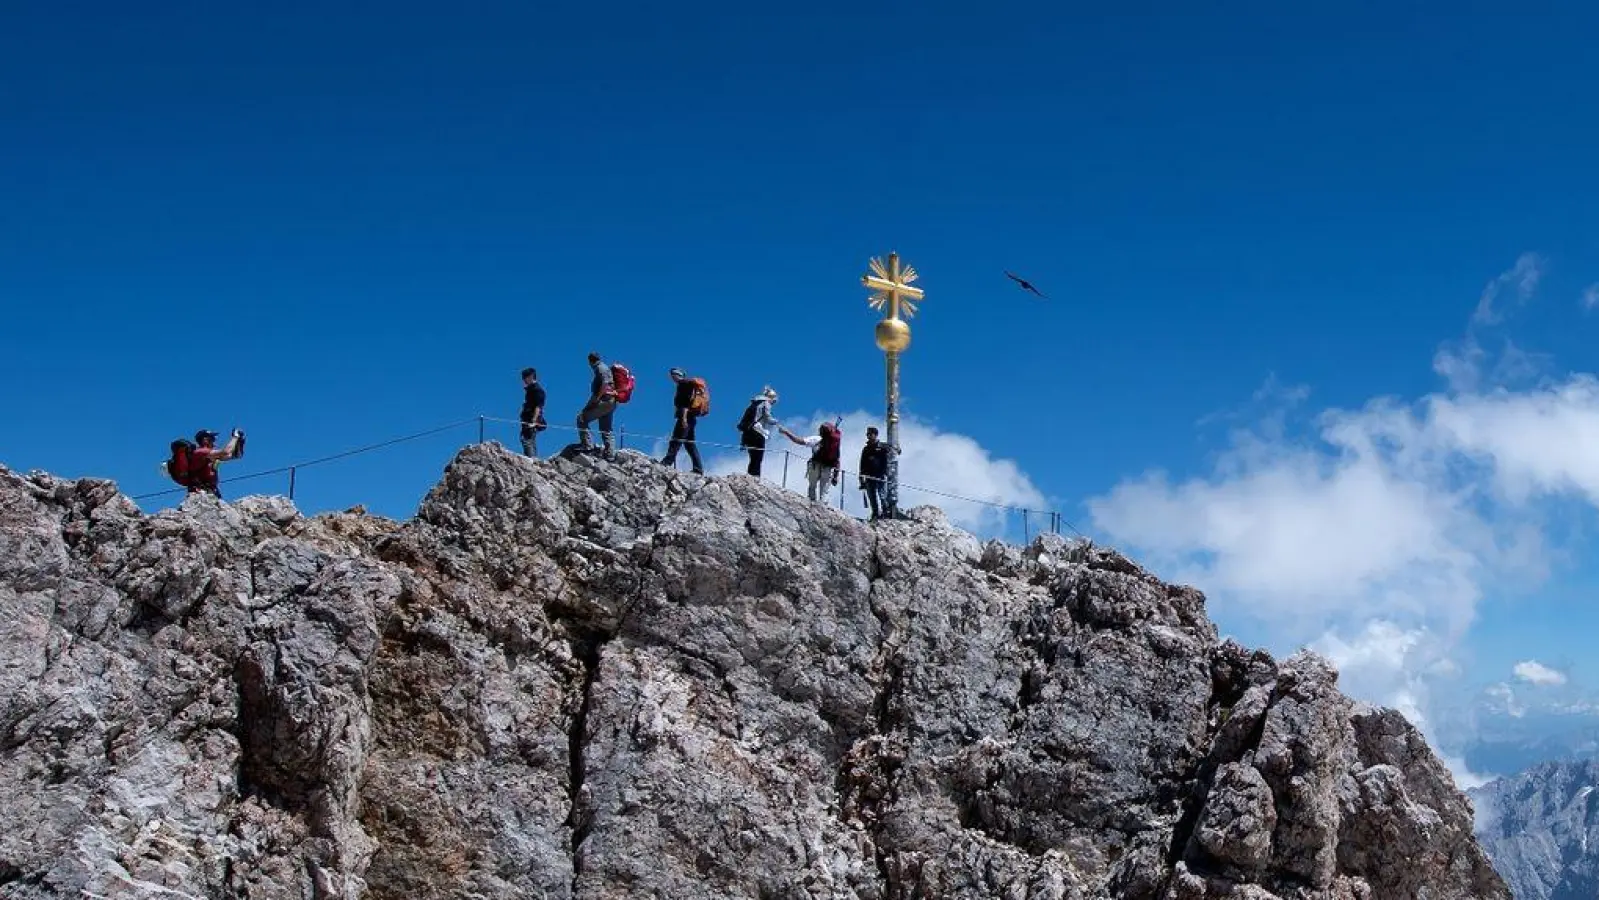 Bergsteiger am Gipfelkreuz der Zugspitze: In dieser Höhe (2962 m) braucht der Körper schon etwas länger, um sich anzupassen. (Foto: Sven Hoppe/dpa)